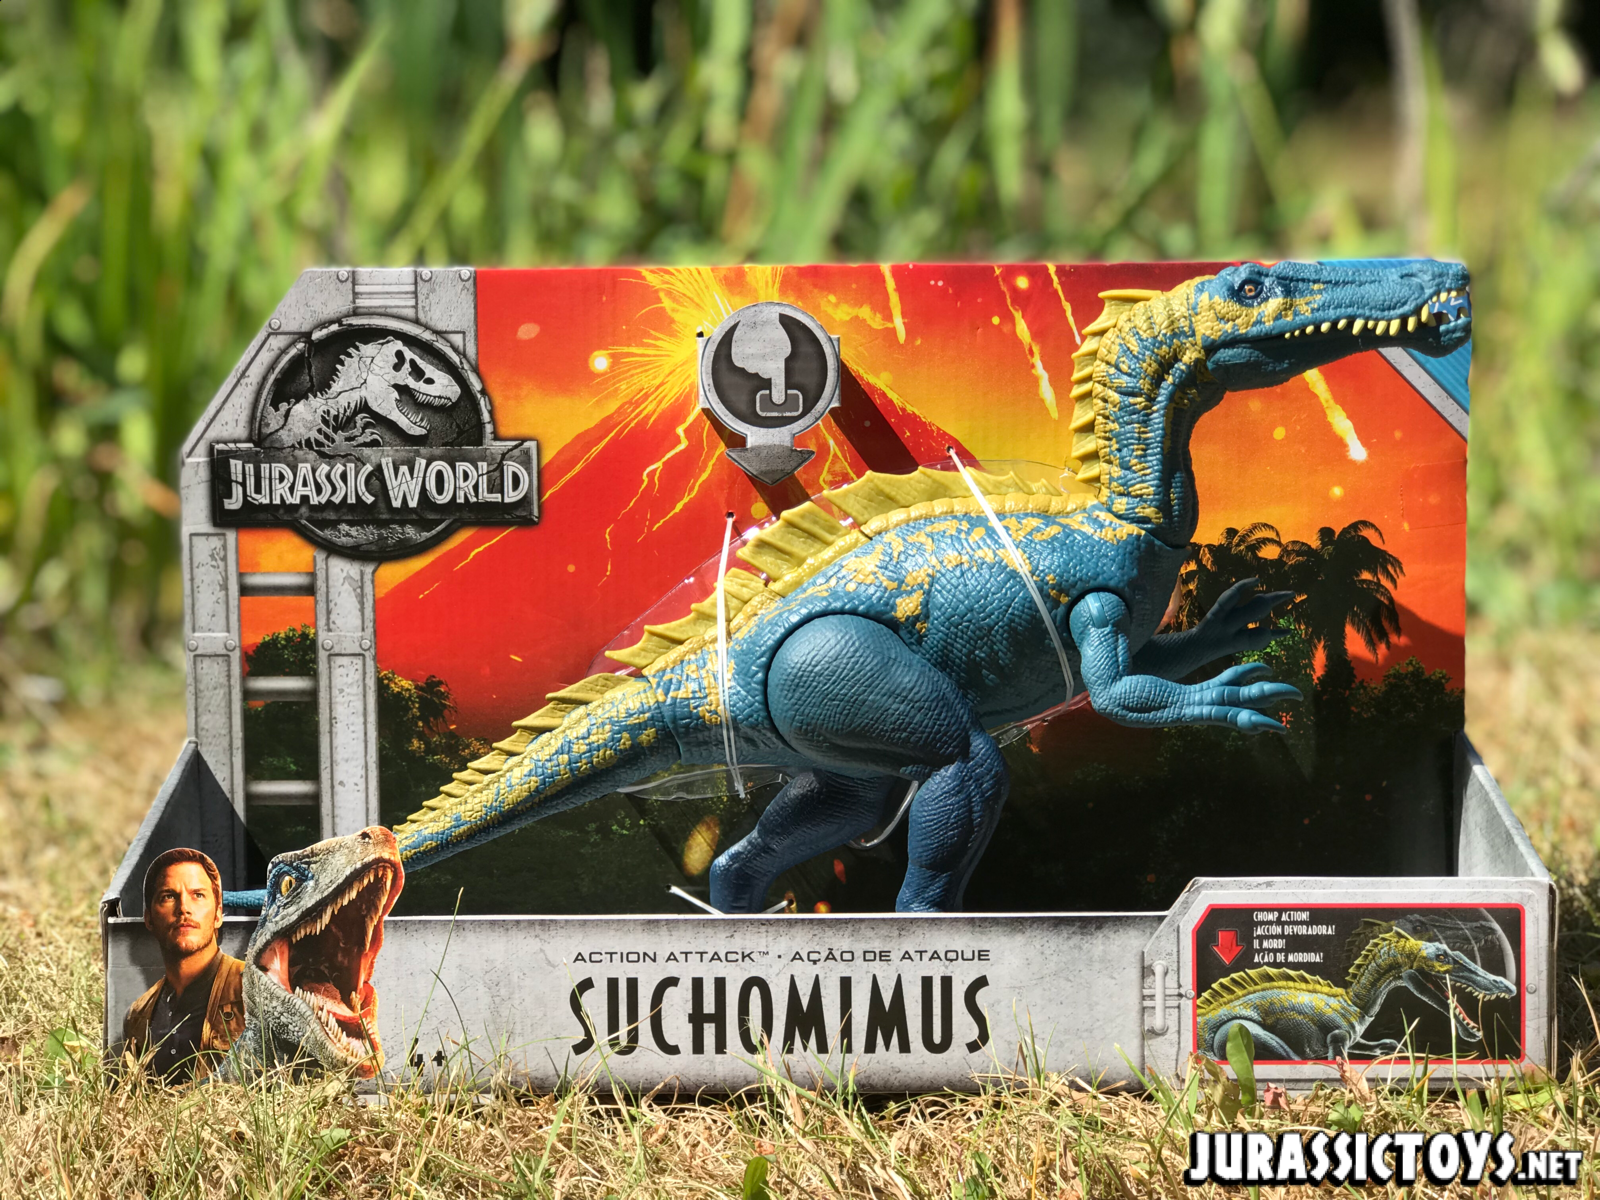 Jurassic World Action Attack Suchomimus Figure 